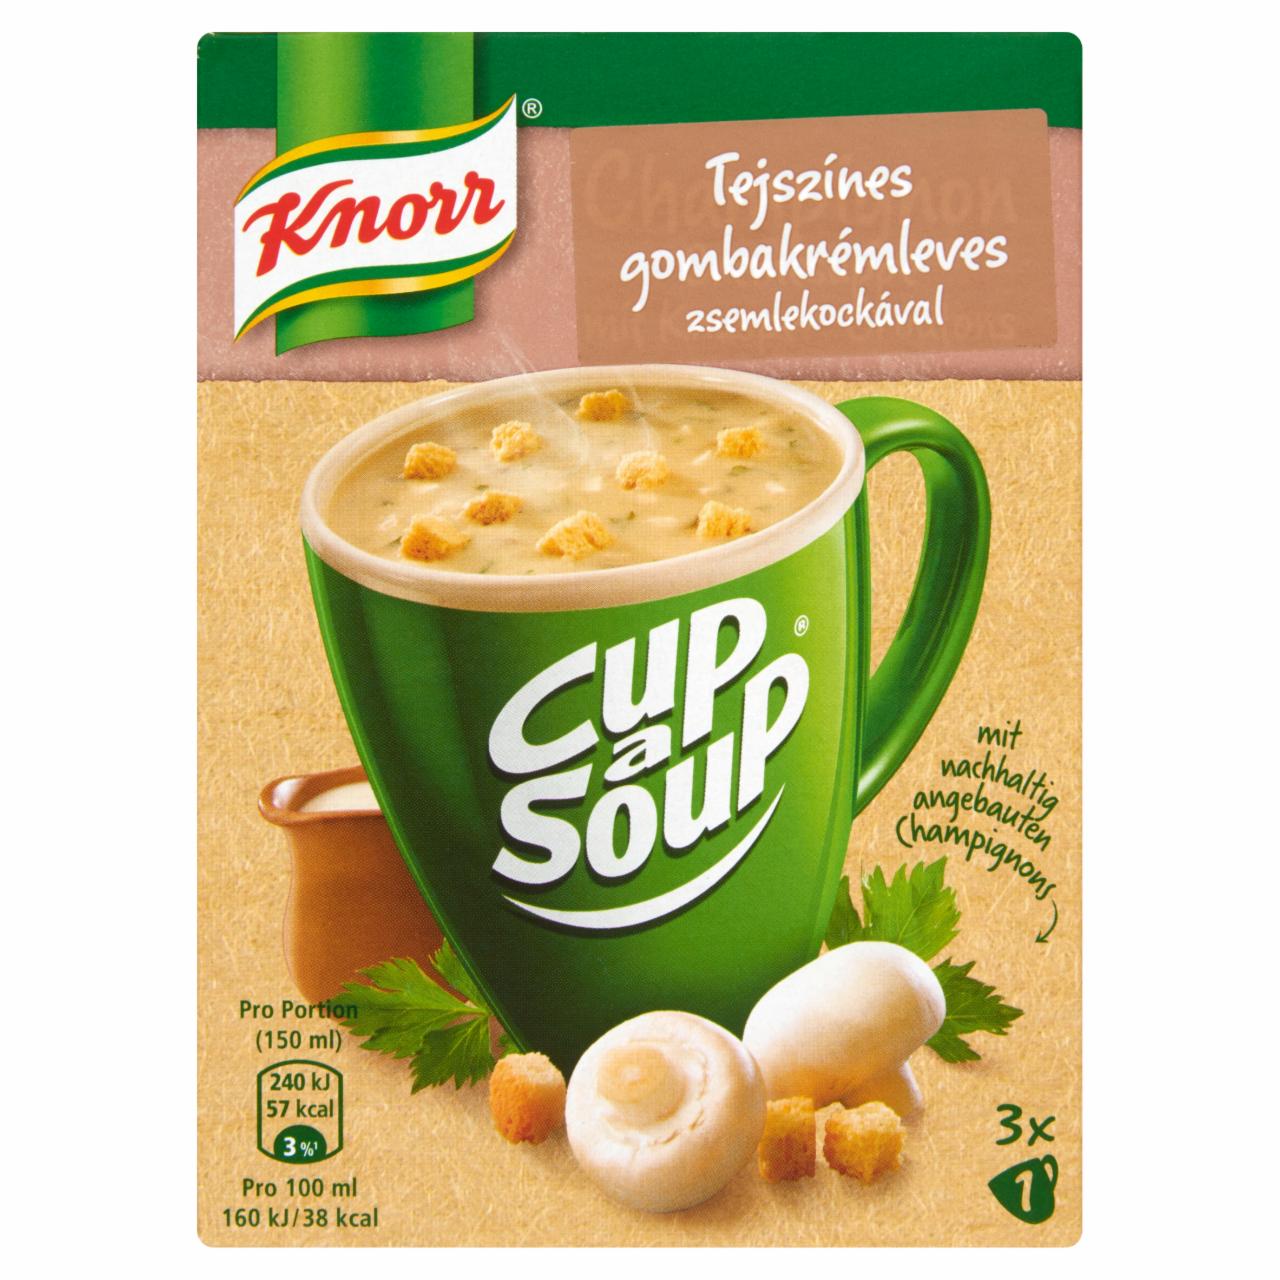 Képek - Knorr Cup a Soup tejszínes gombakrémleves zsemlekockával 3 x 12 g